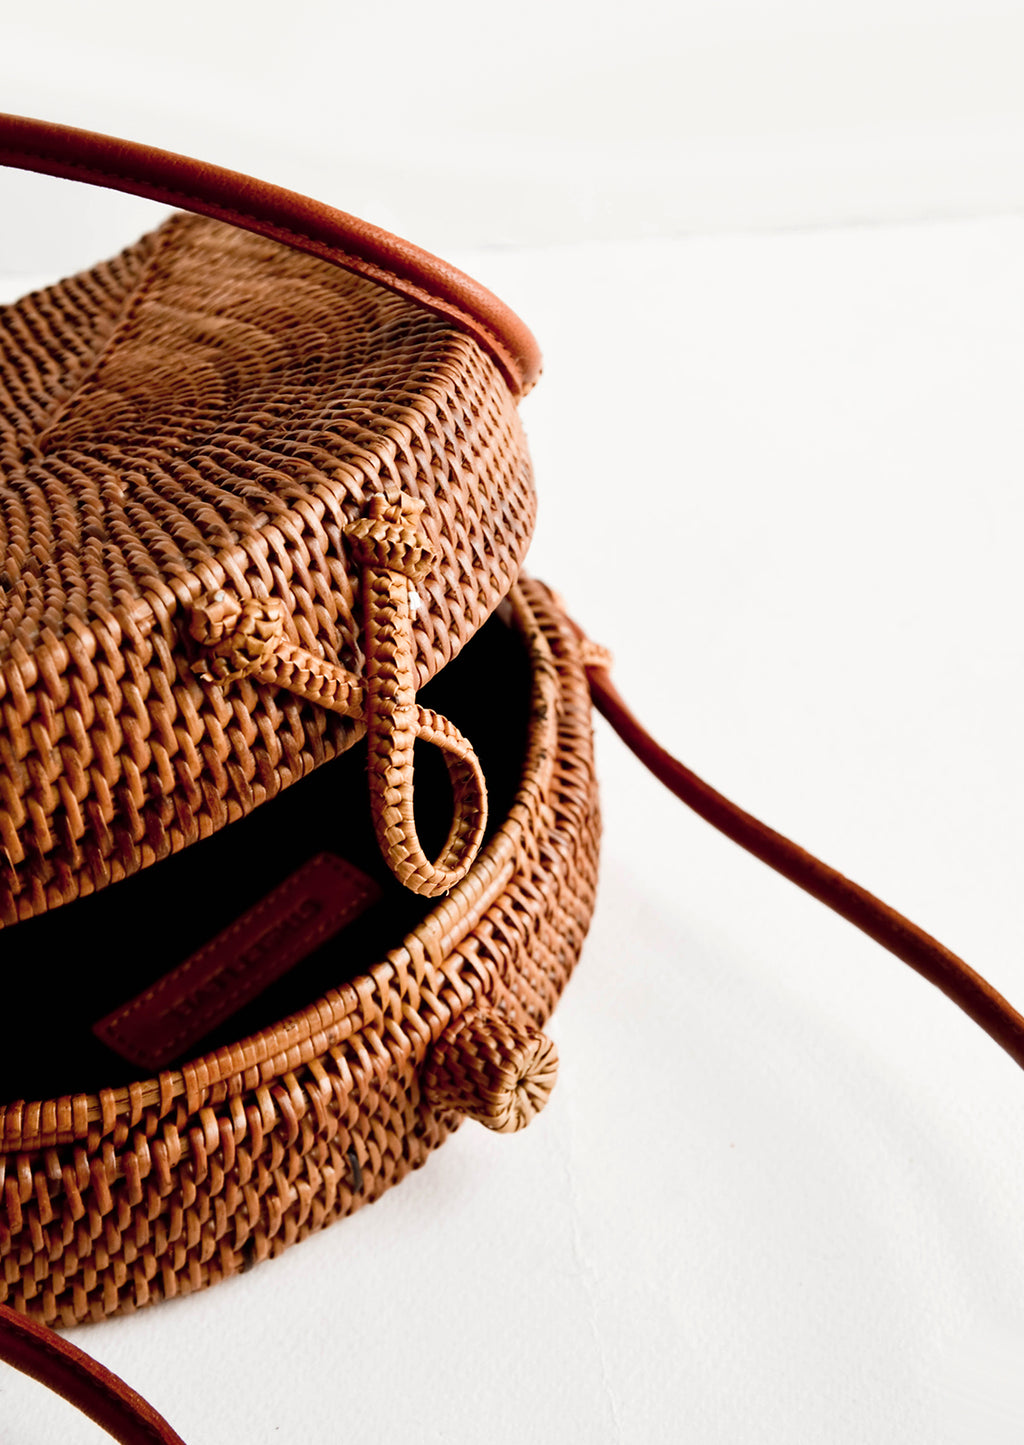 2: Woven clasp closure on smoked rattan handbag.